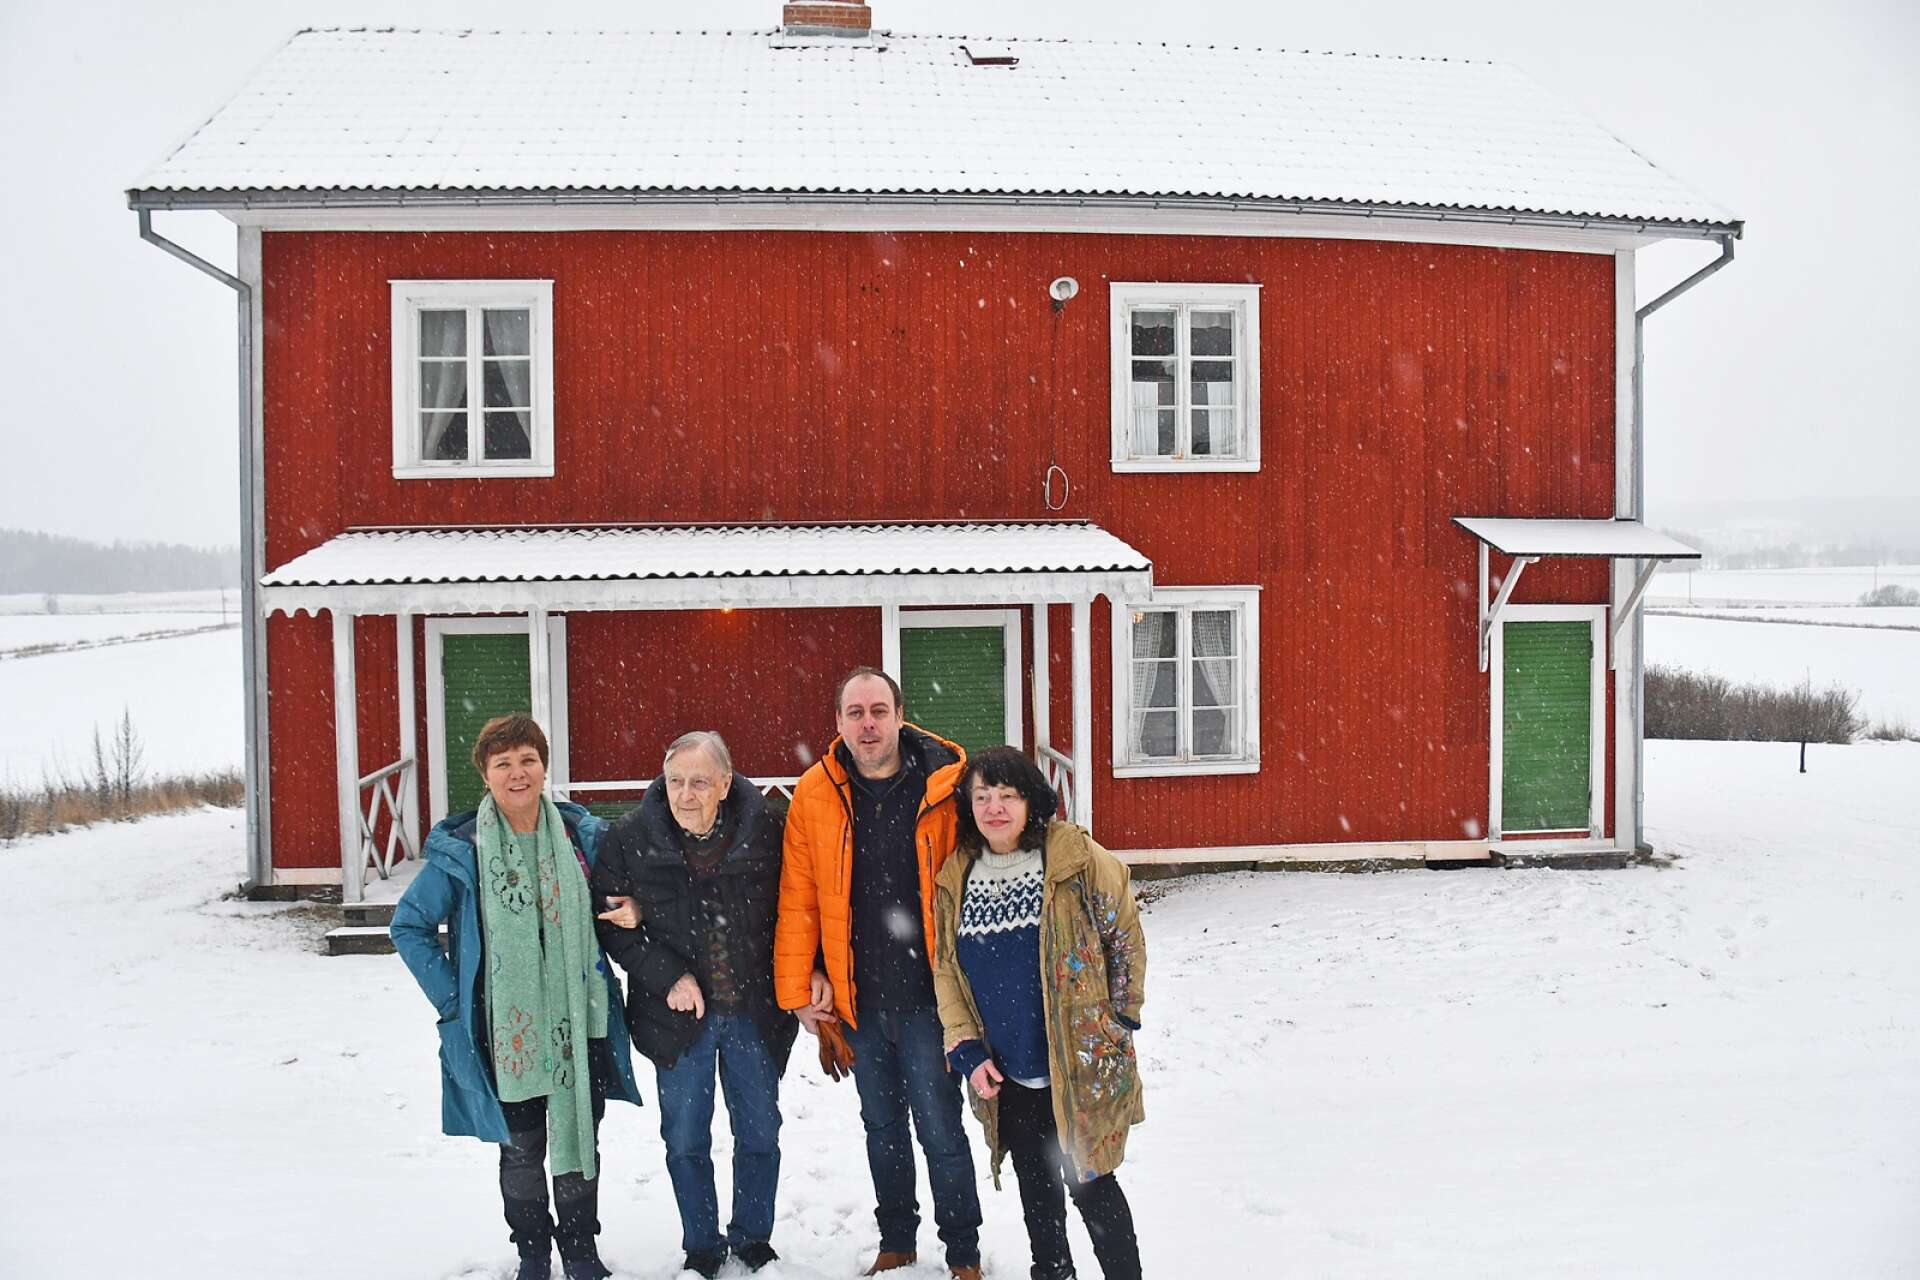 Anette Rhudin, Hilding Bergqvist, Andreas Slätt och Marja i Myrom (från vänster) arbetar tillsammans med en bok om Hildings minnen från julfiranden med Selma Lagerlöf. Här står de framför arbetarbostaden där Hildings föräldrar bott. 